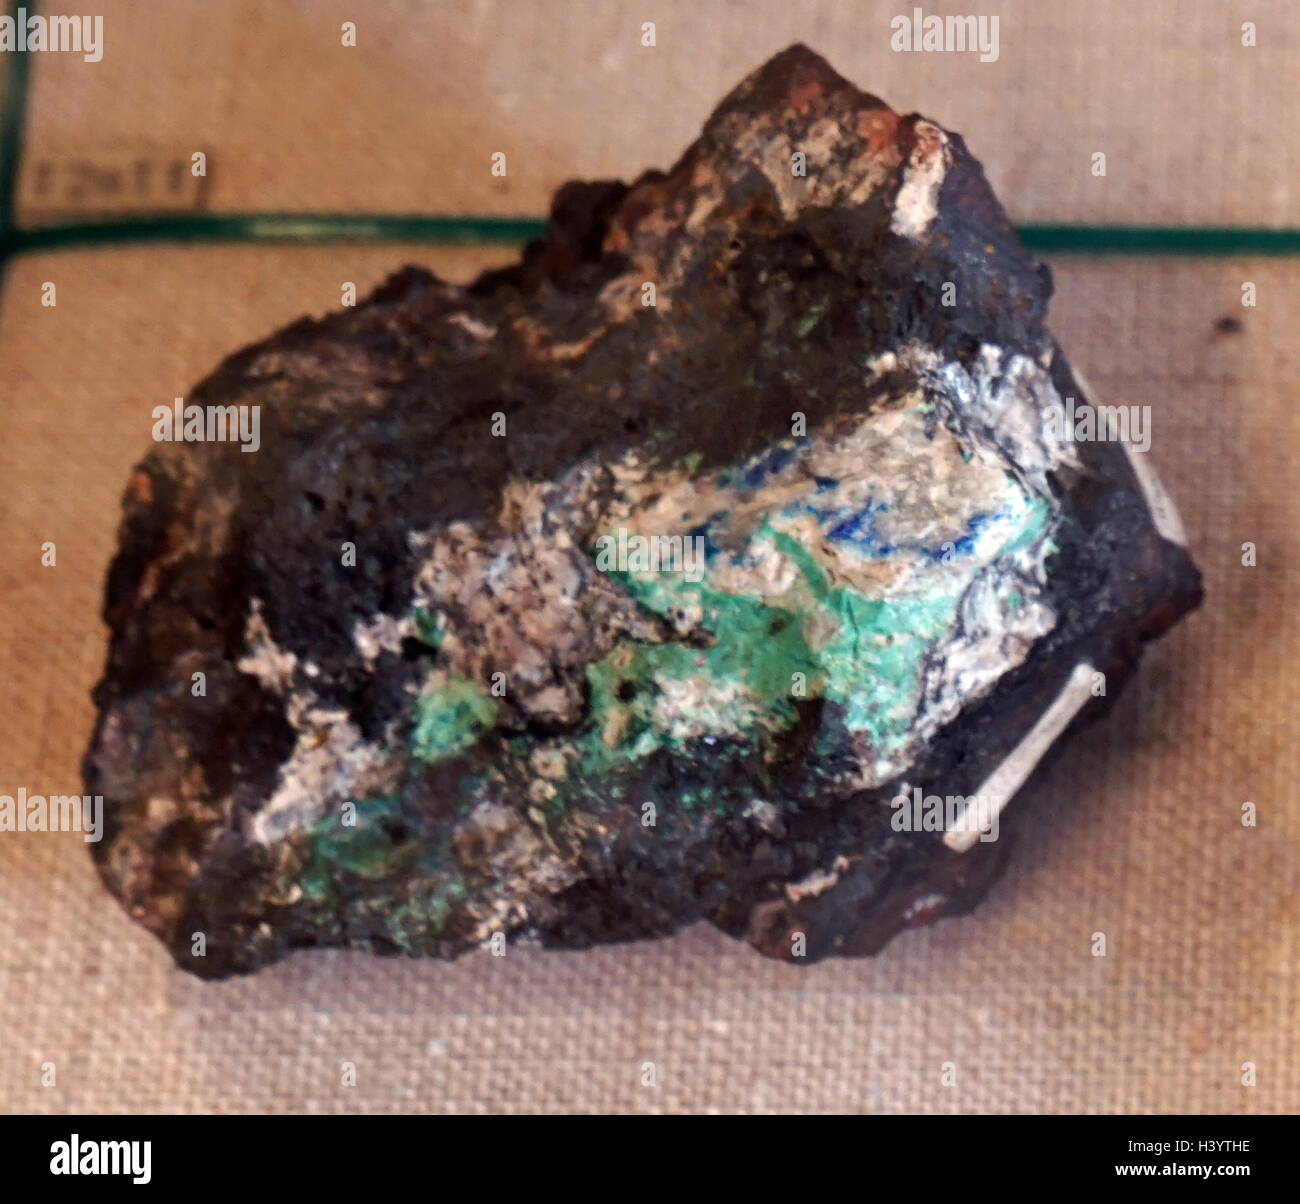 Échantillon de la limonite, un minéral secondaire brun amorphe composé d'un mélange d'oxydes ferriques hydratés, aussi important qu'un minerai de fer. En date du 21e siècle Banque D'Images